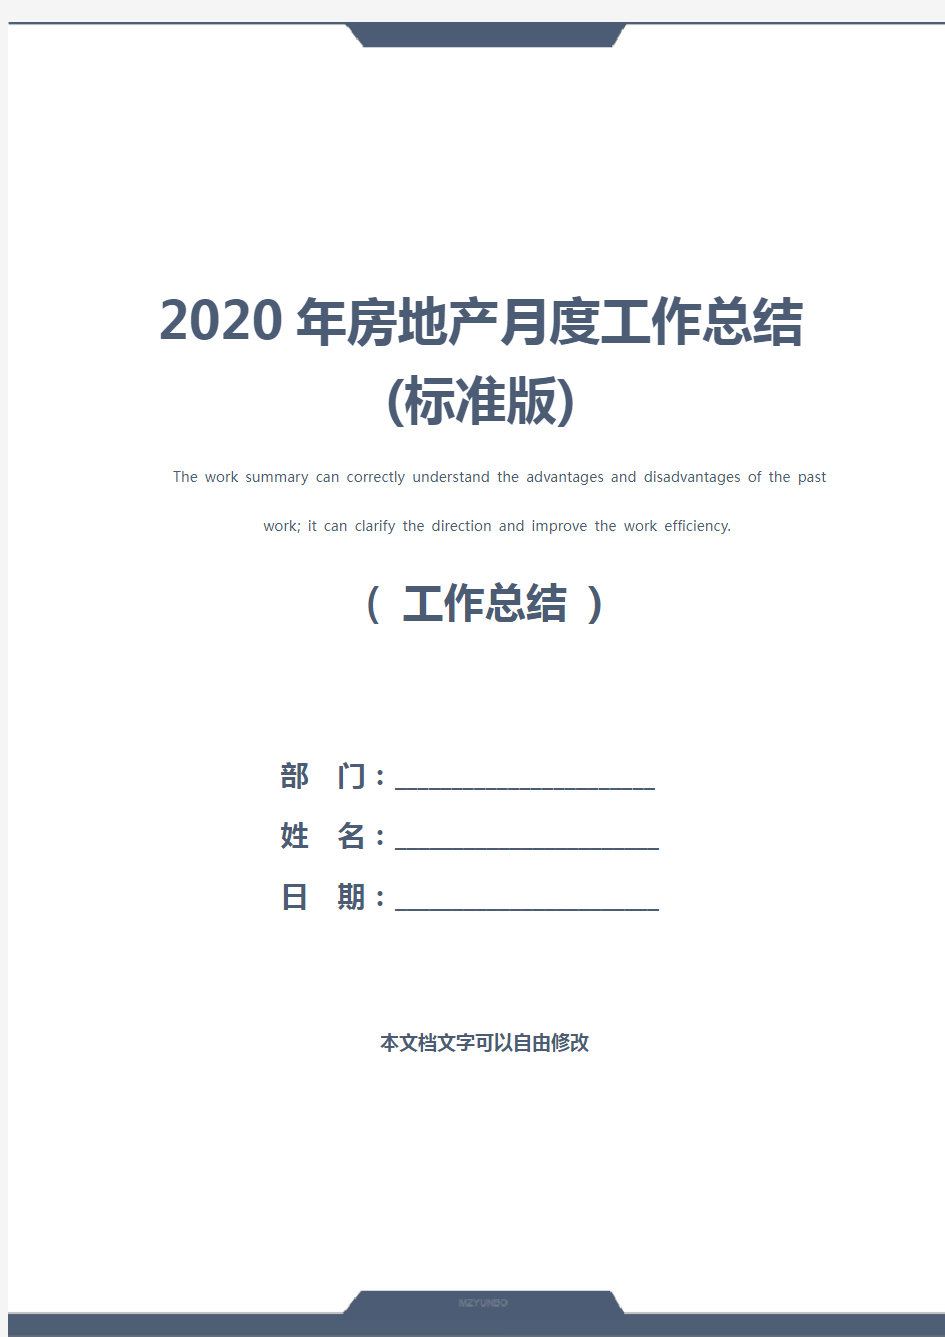 2020年房地产月度工作总结(标准版)